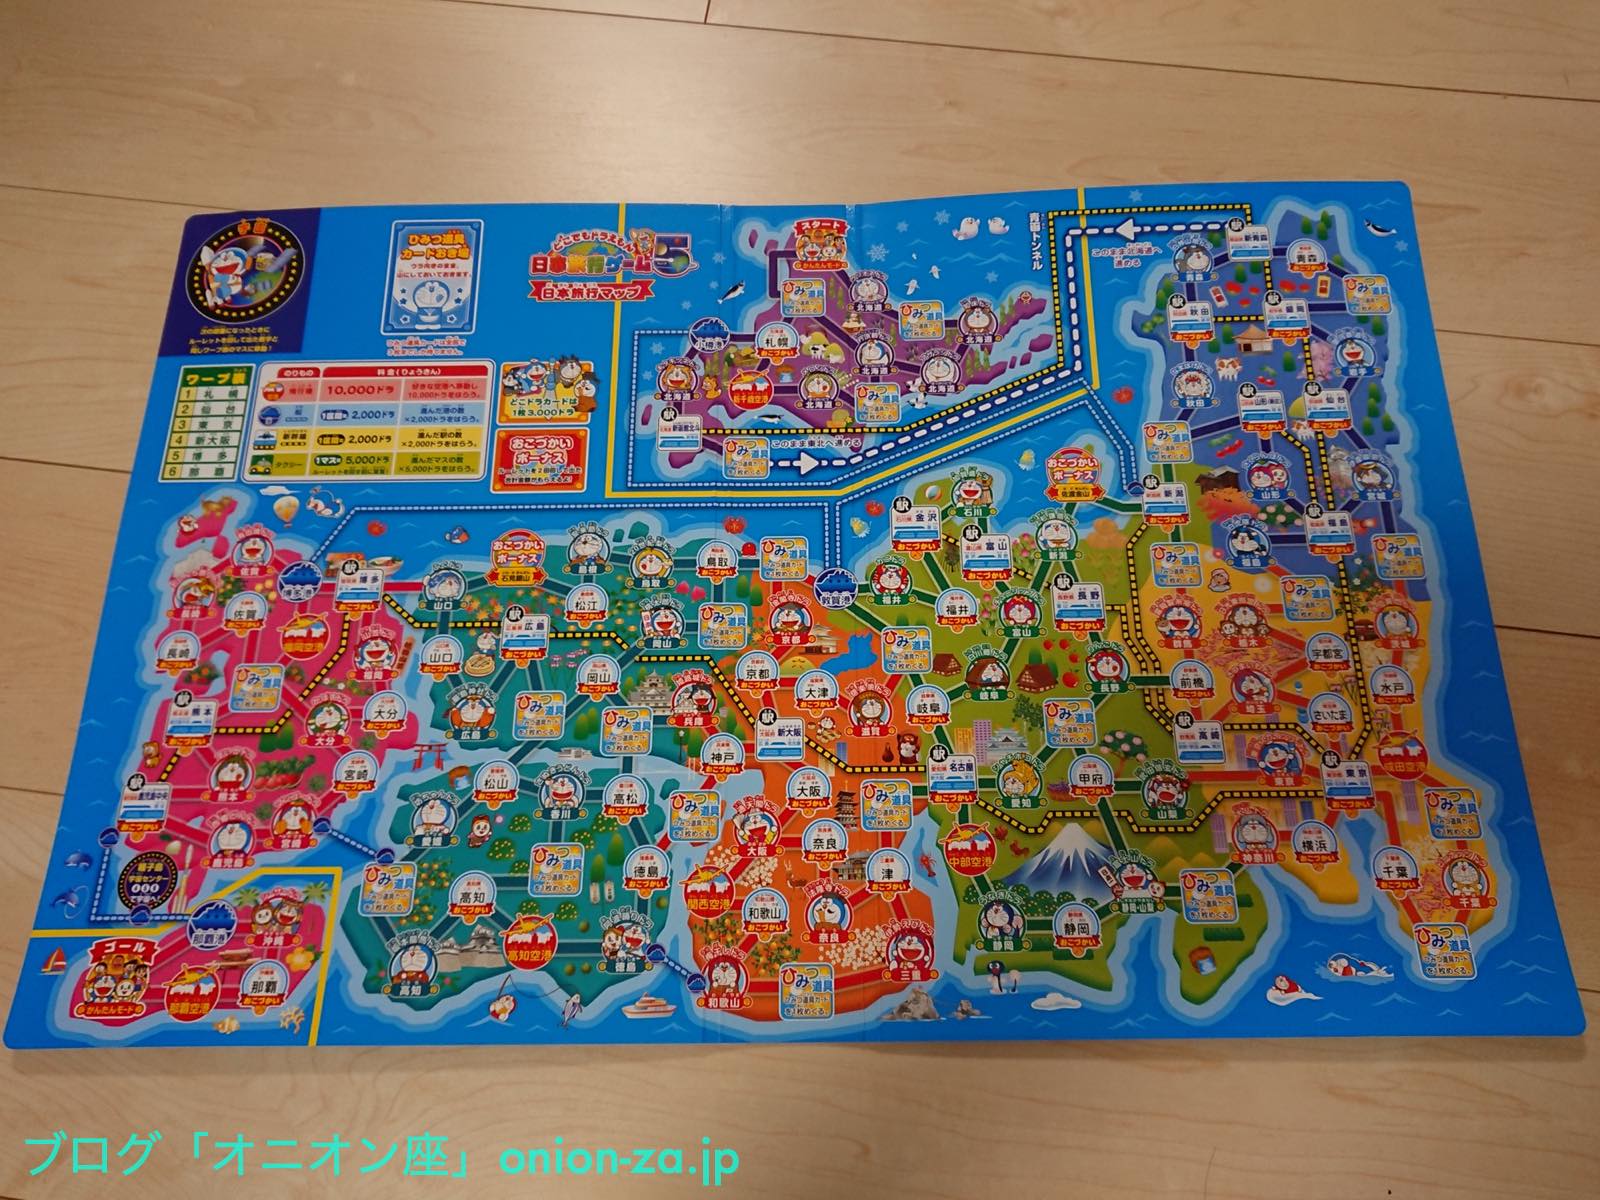 ステイホーム！お家で遊べるすごろくゲーム「どこでもドラえもん日本旅行ゲーム5」をやってみた - パパママ世代応援ブログ：オニオン座